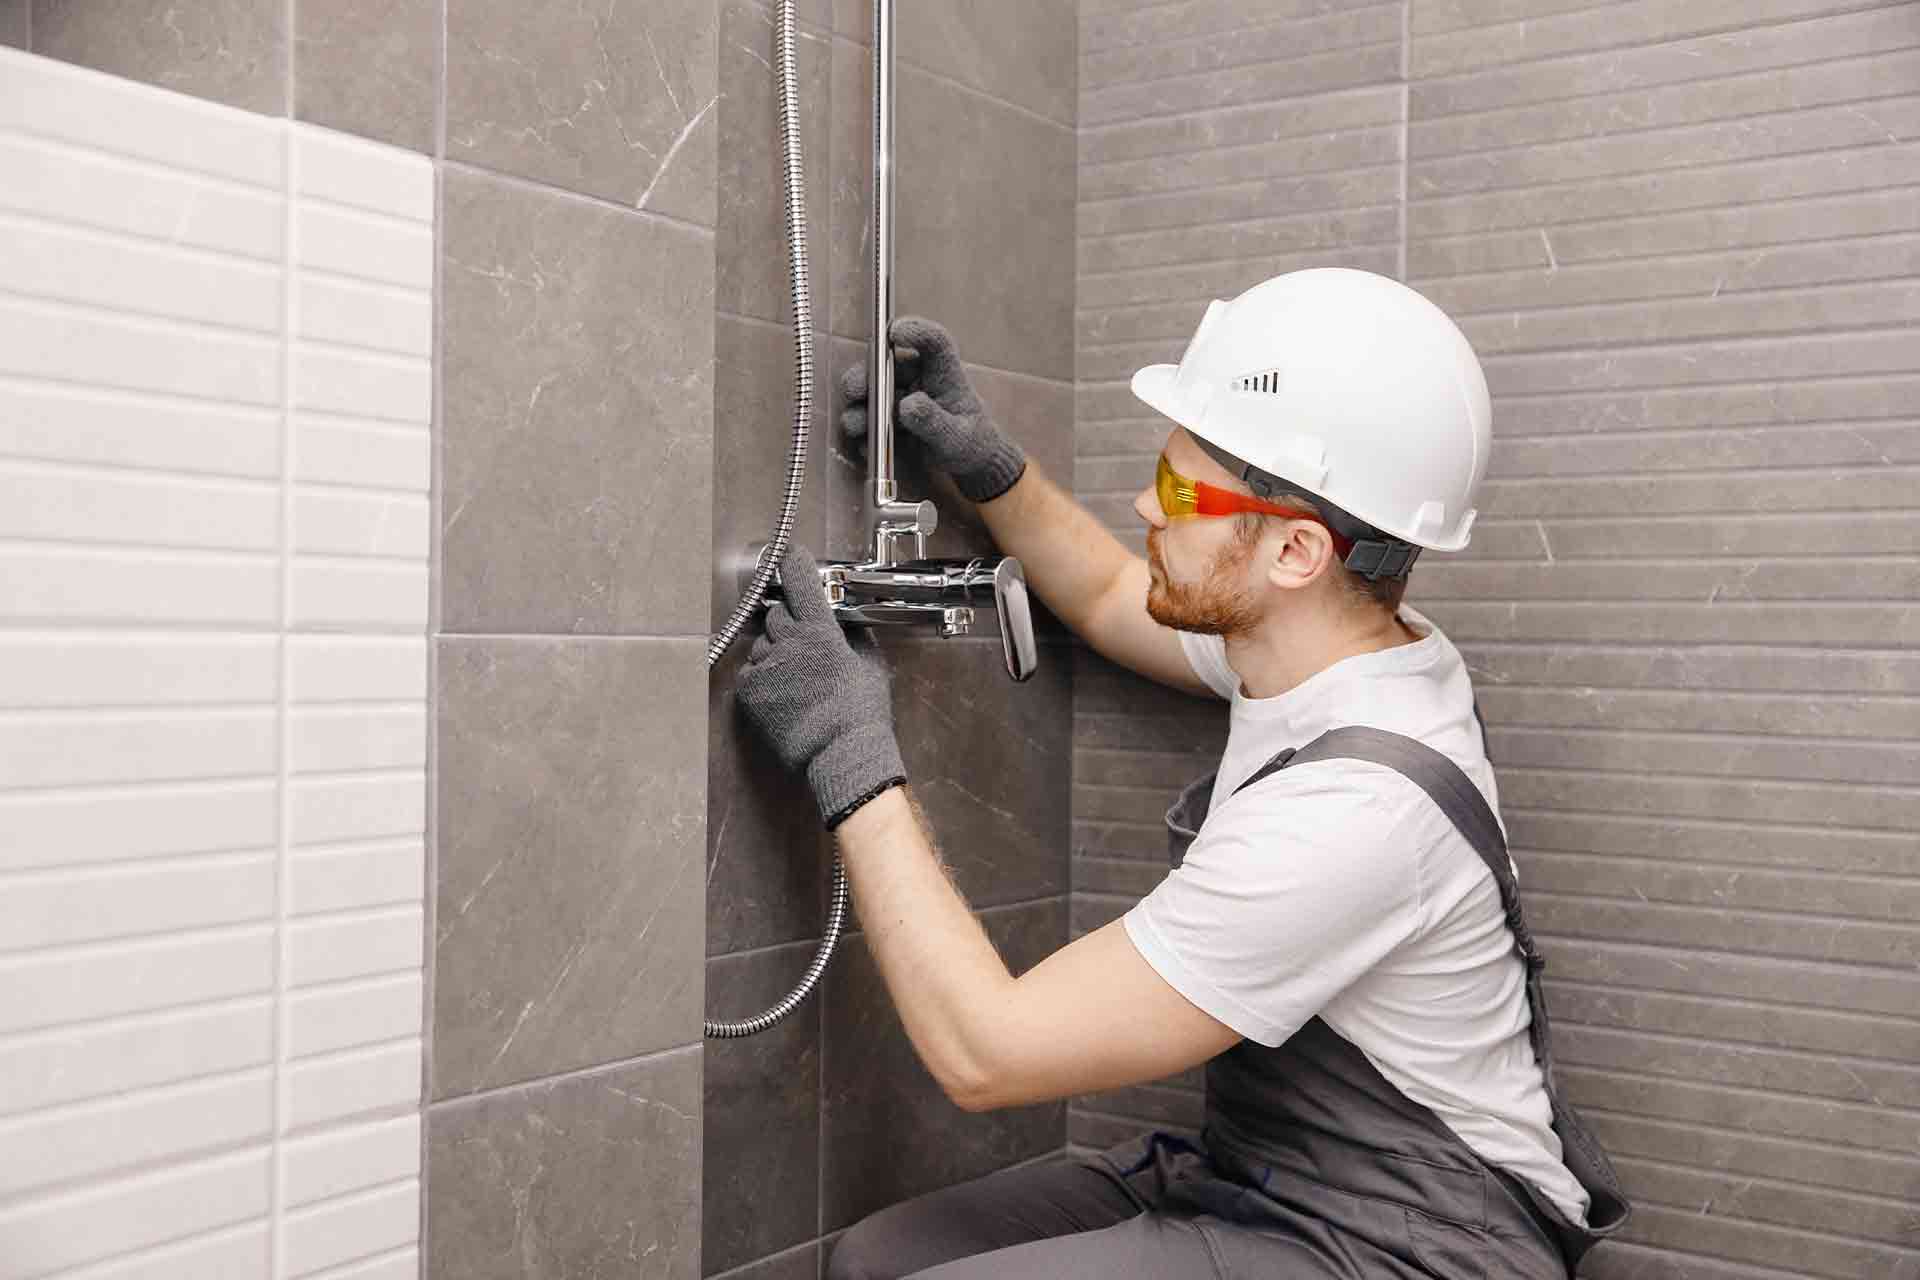 https://www.checkatrade.com/blog/wp-content/uploads/2021/01/How-to-install-a-shower.jpg